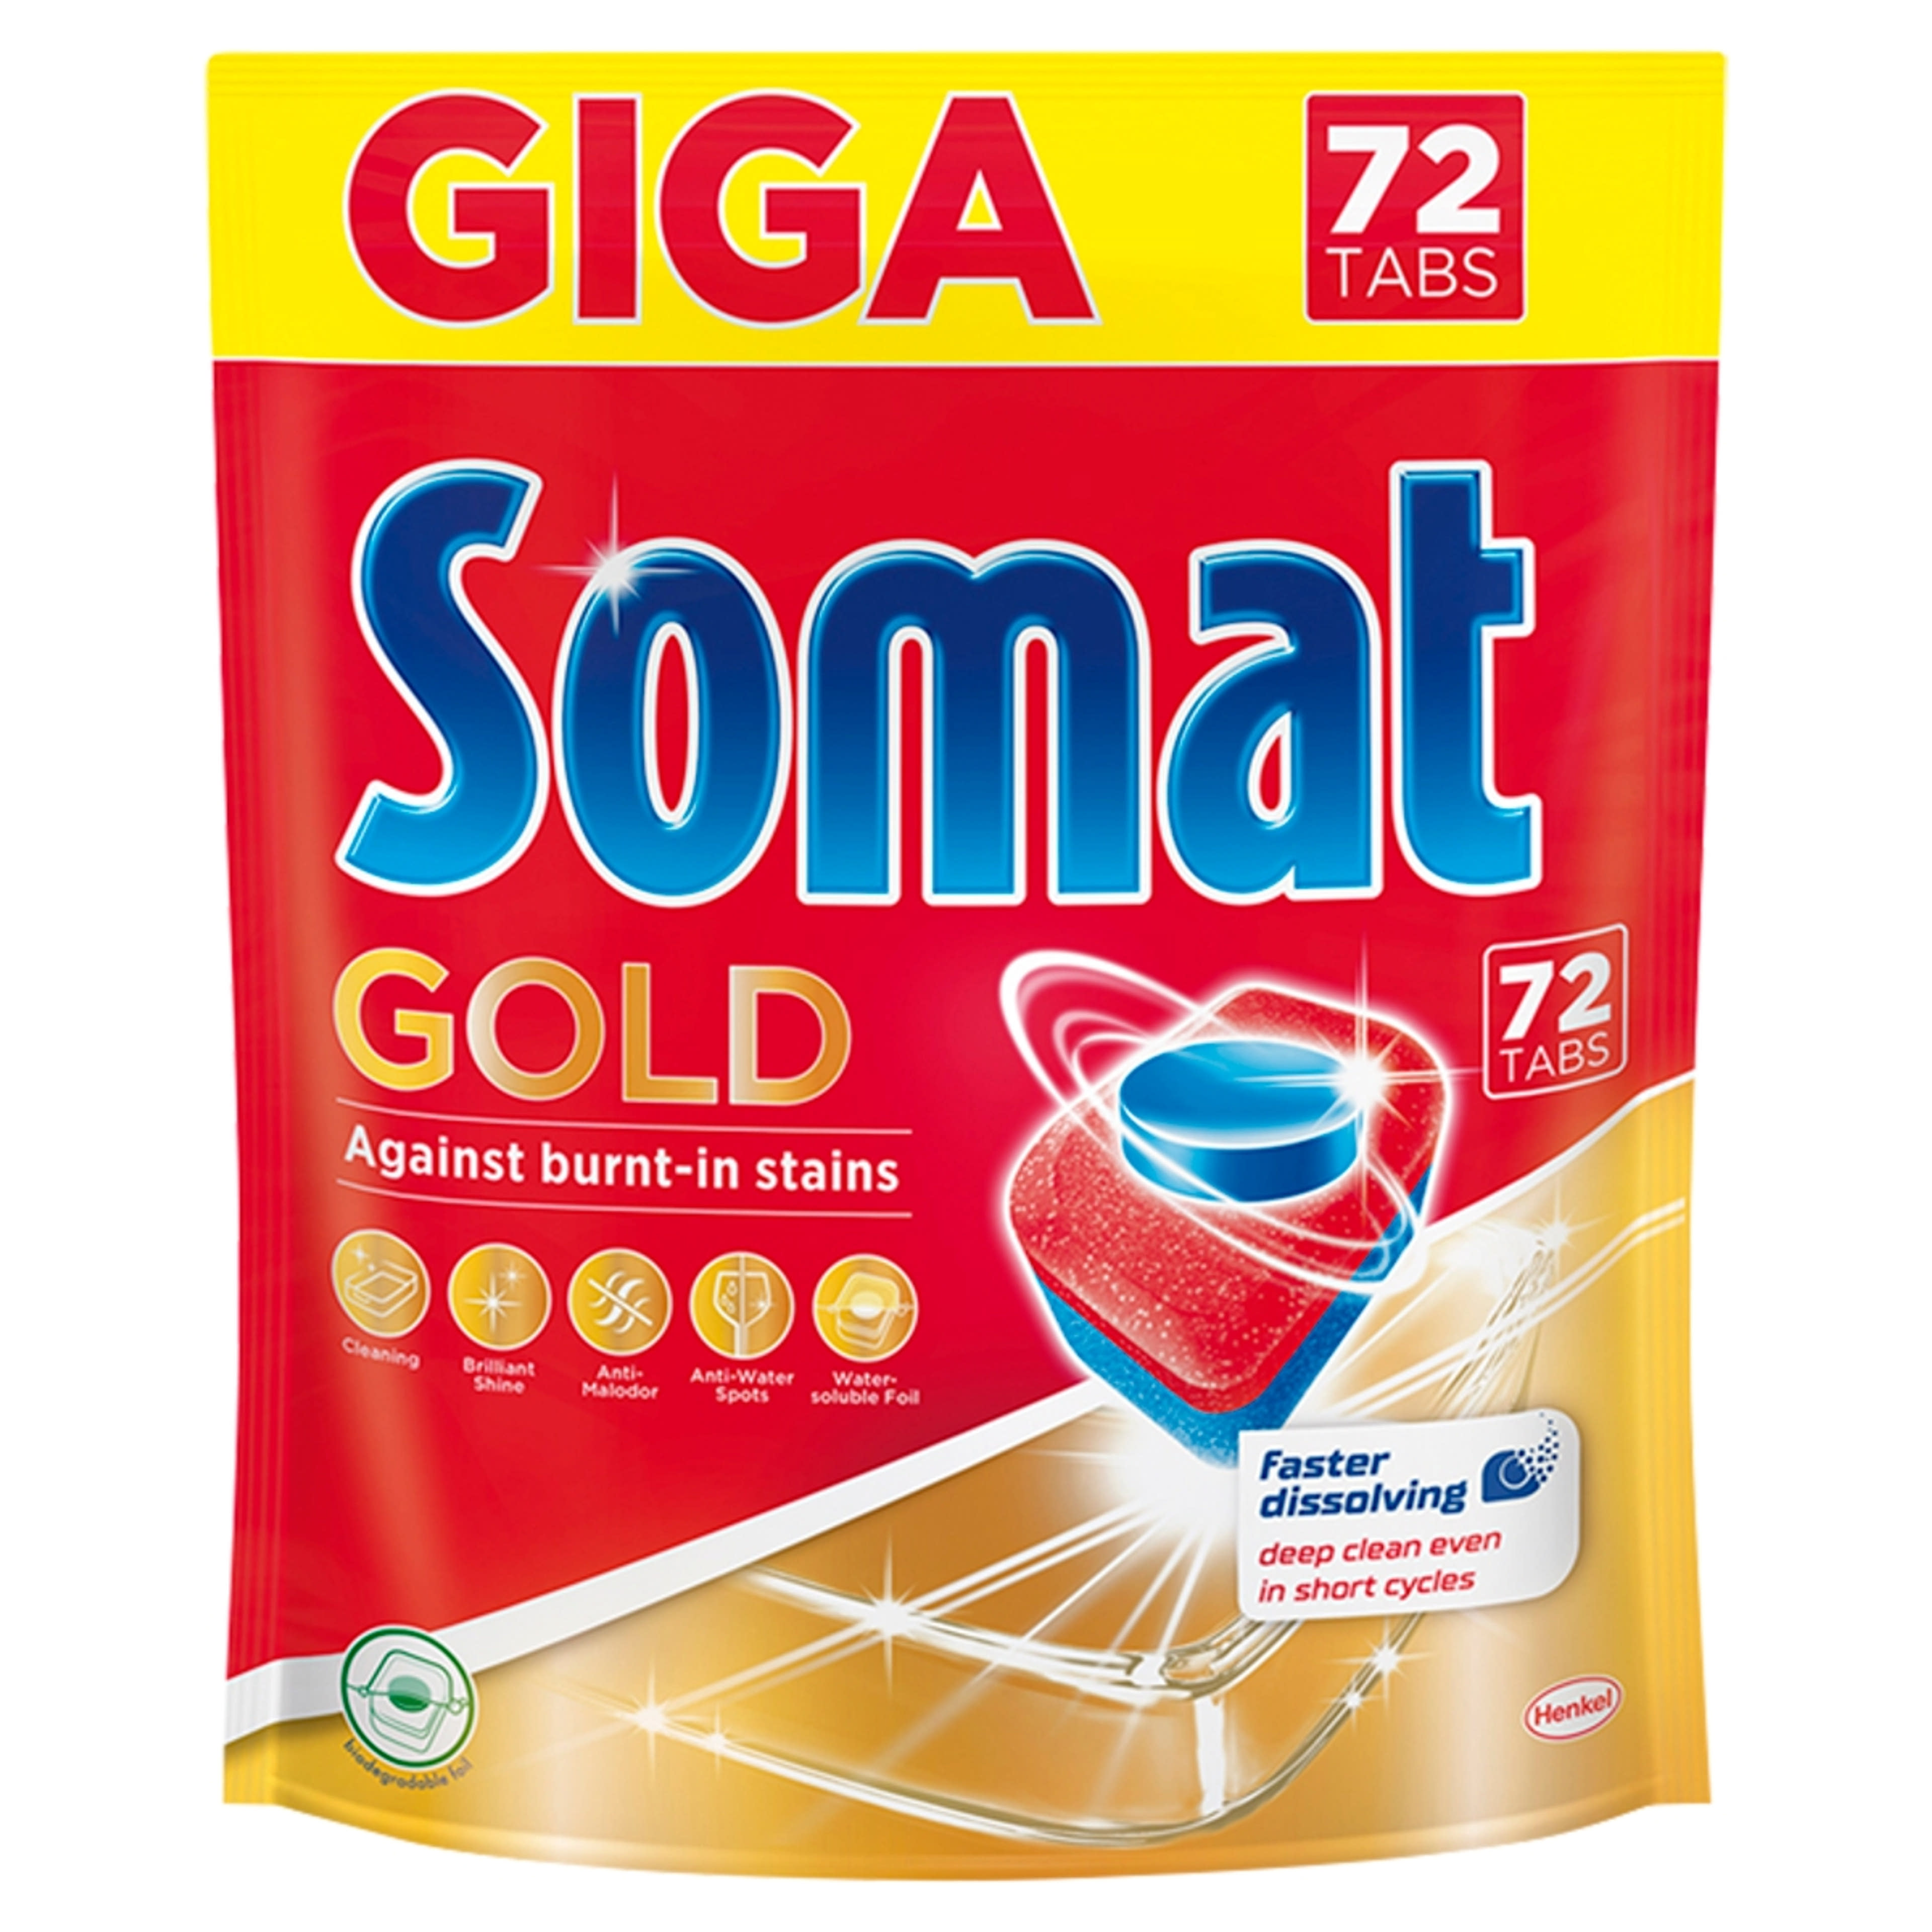 Somat Gold mosogatógép tabletta, 72 mosás - 72 db